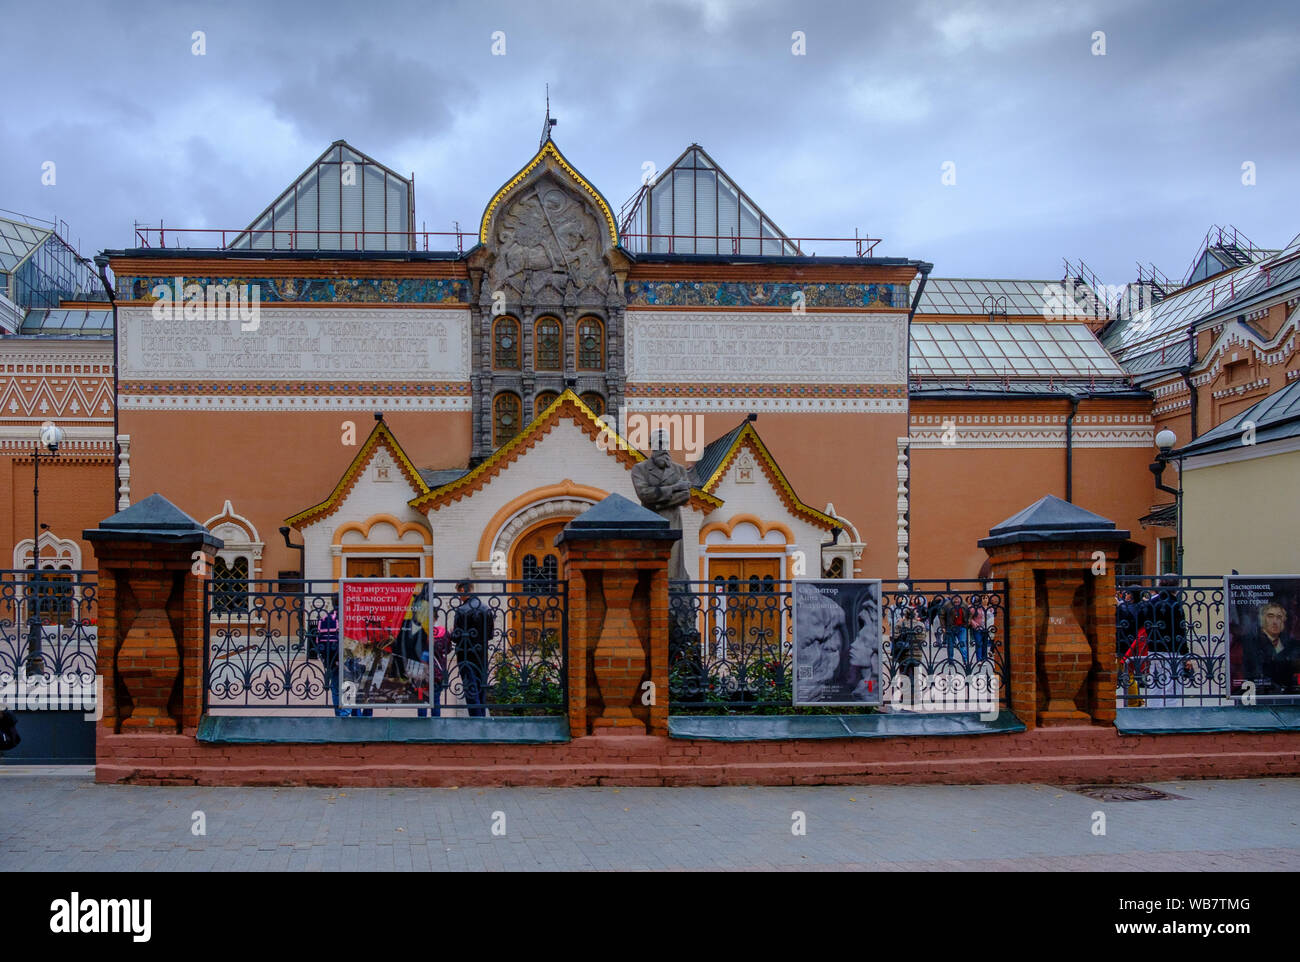 Moscou, Russie - 1 août 2019 : Galerie nationale Tretiakov est une galerie d'art à Moscou, Russie, le principal dépositaire de l'art russe dans le monde entier Banque D'Images